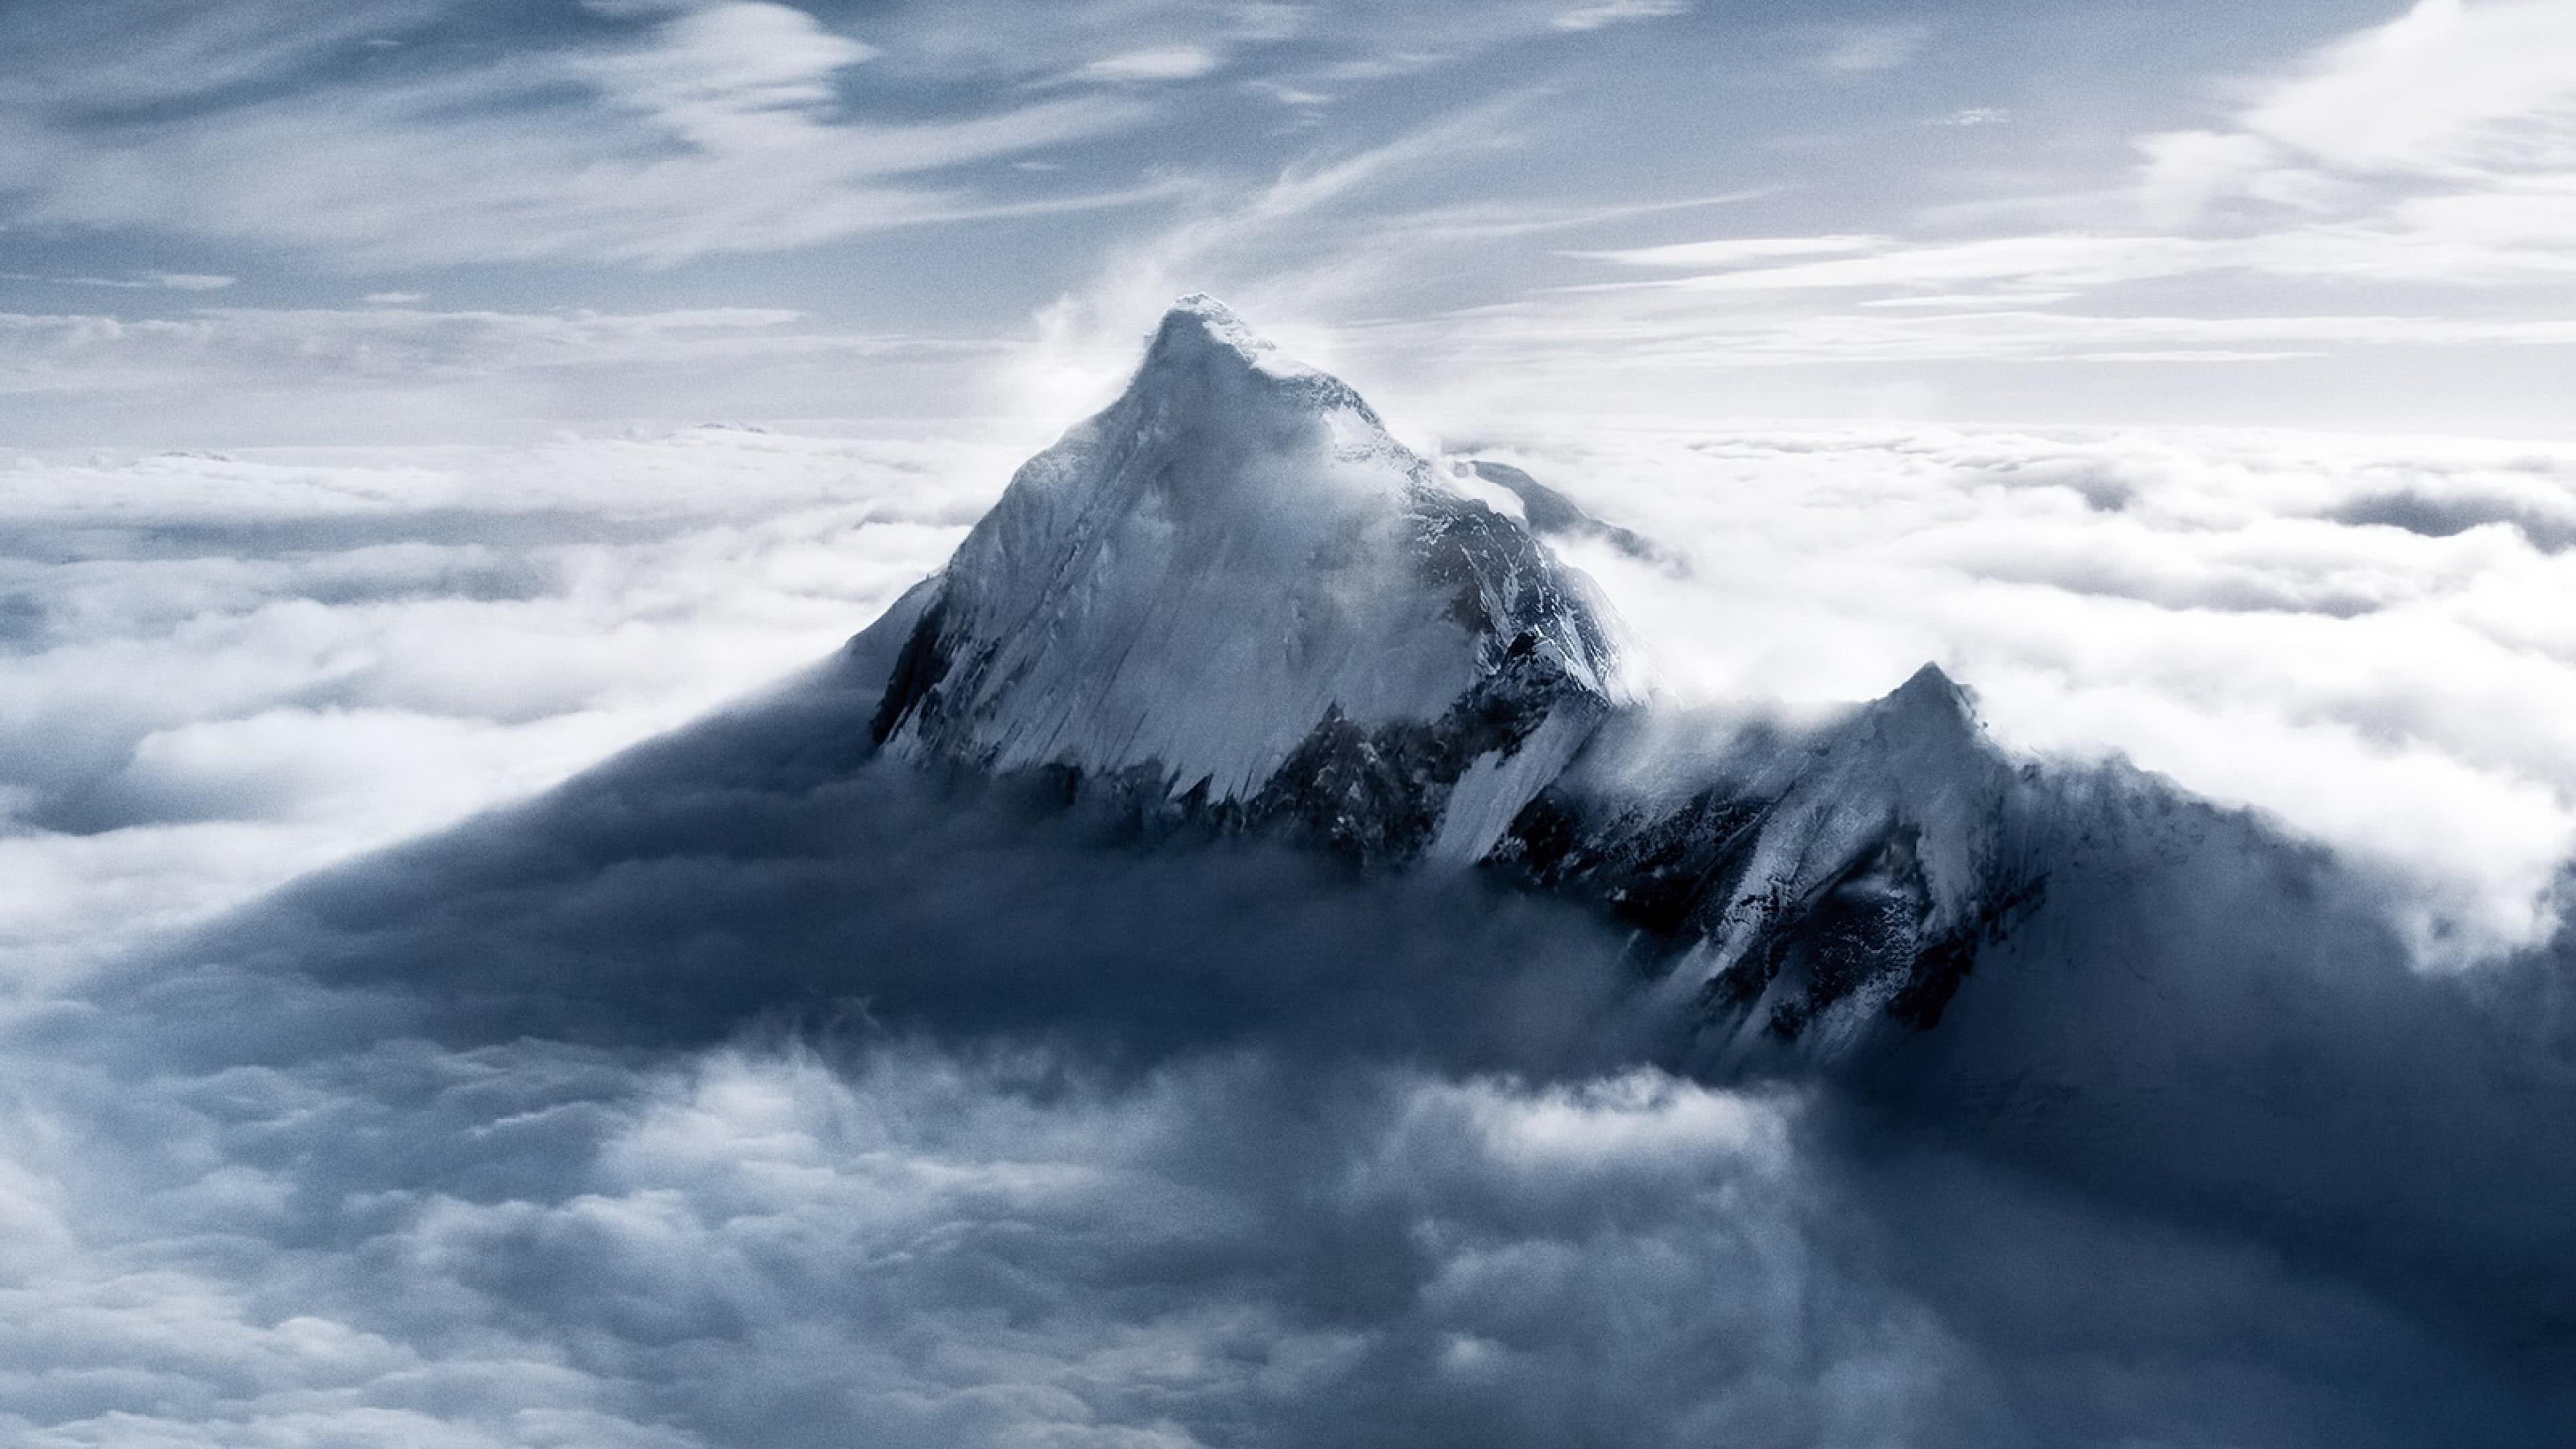 Mount Everest, Mahalangur Mountain Range, Himalayas, Nepal UHD 4K